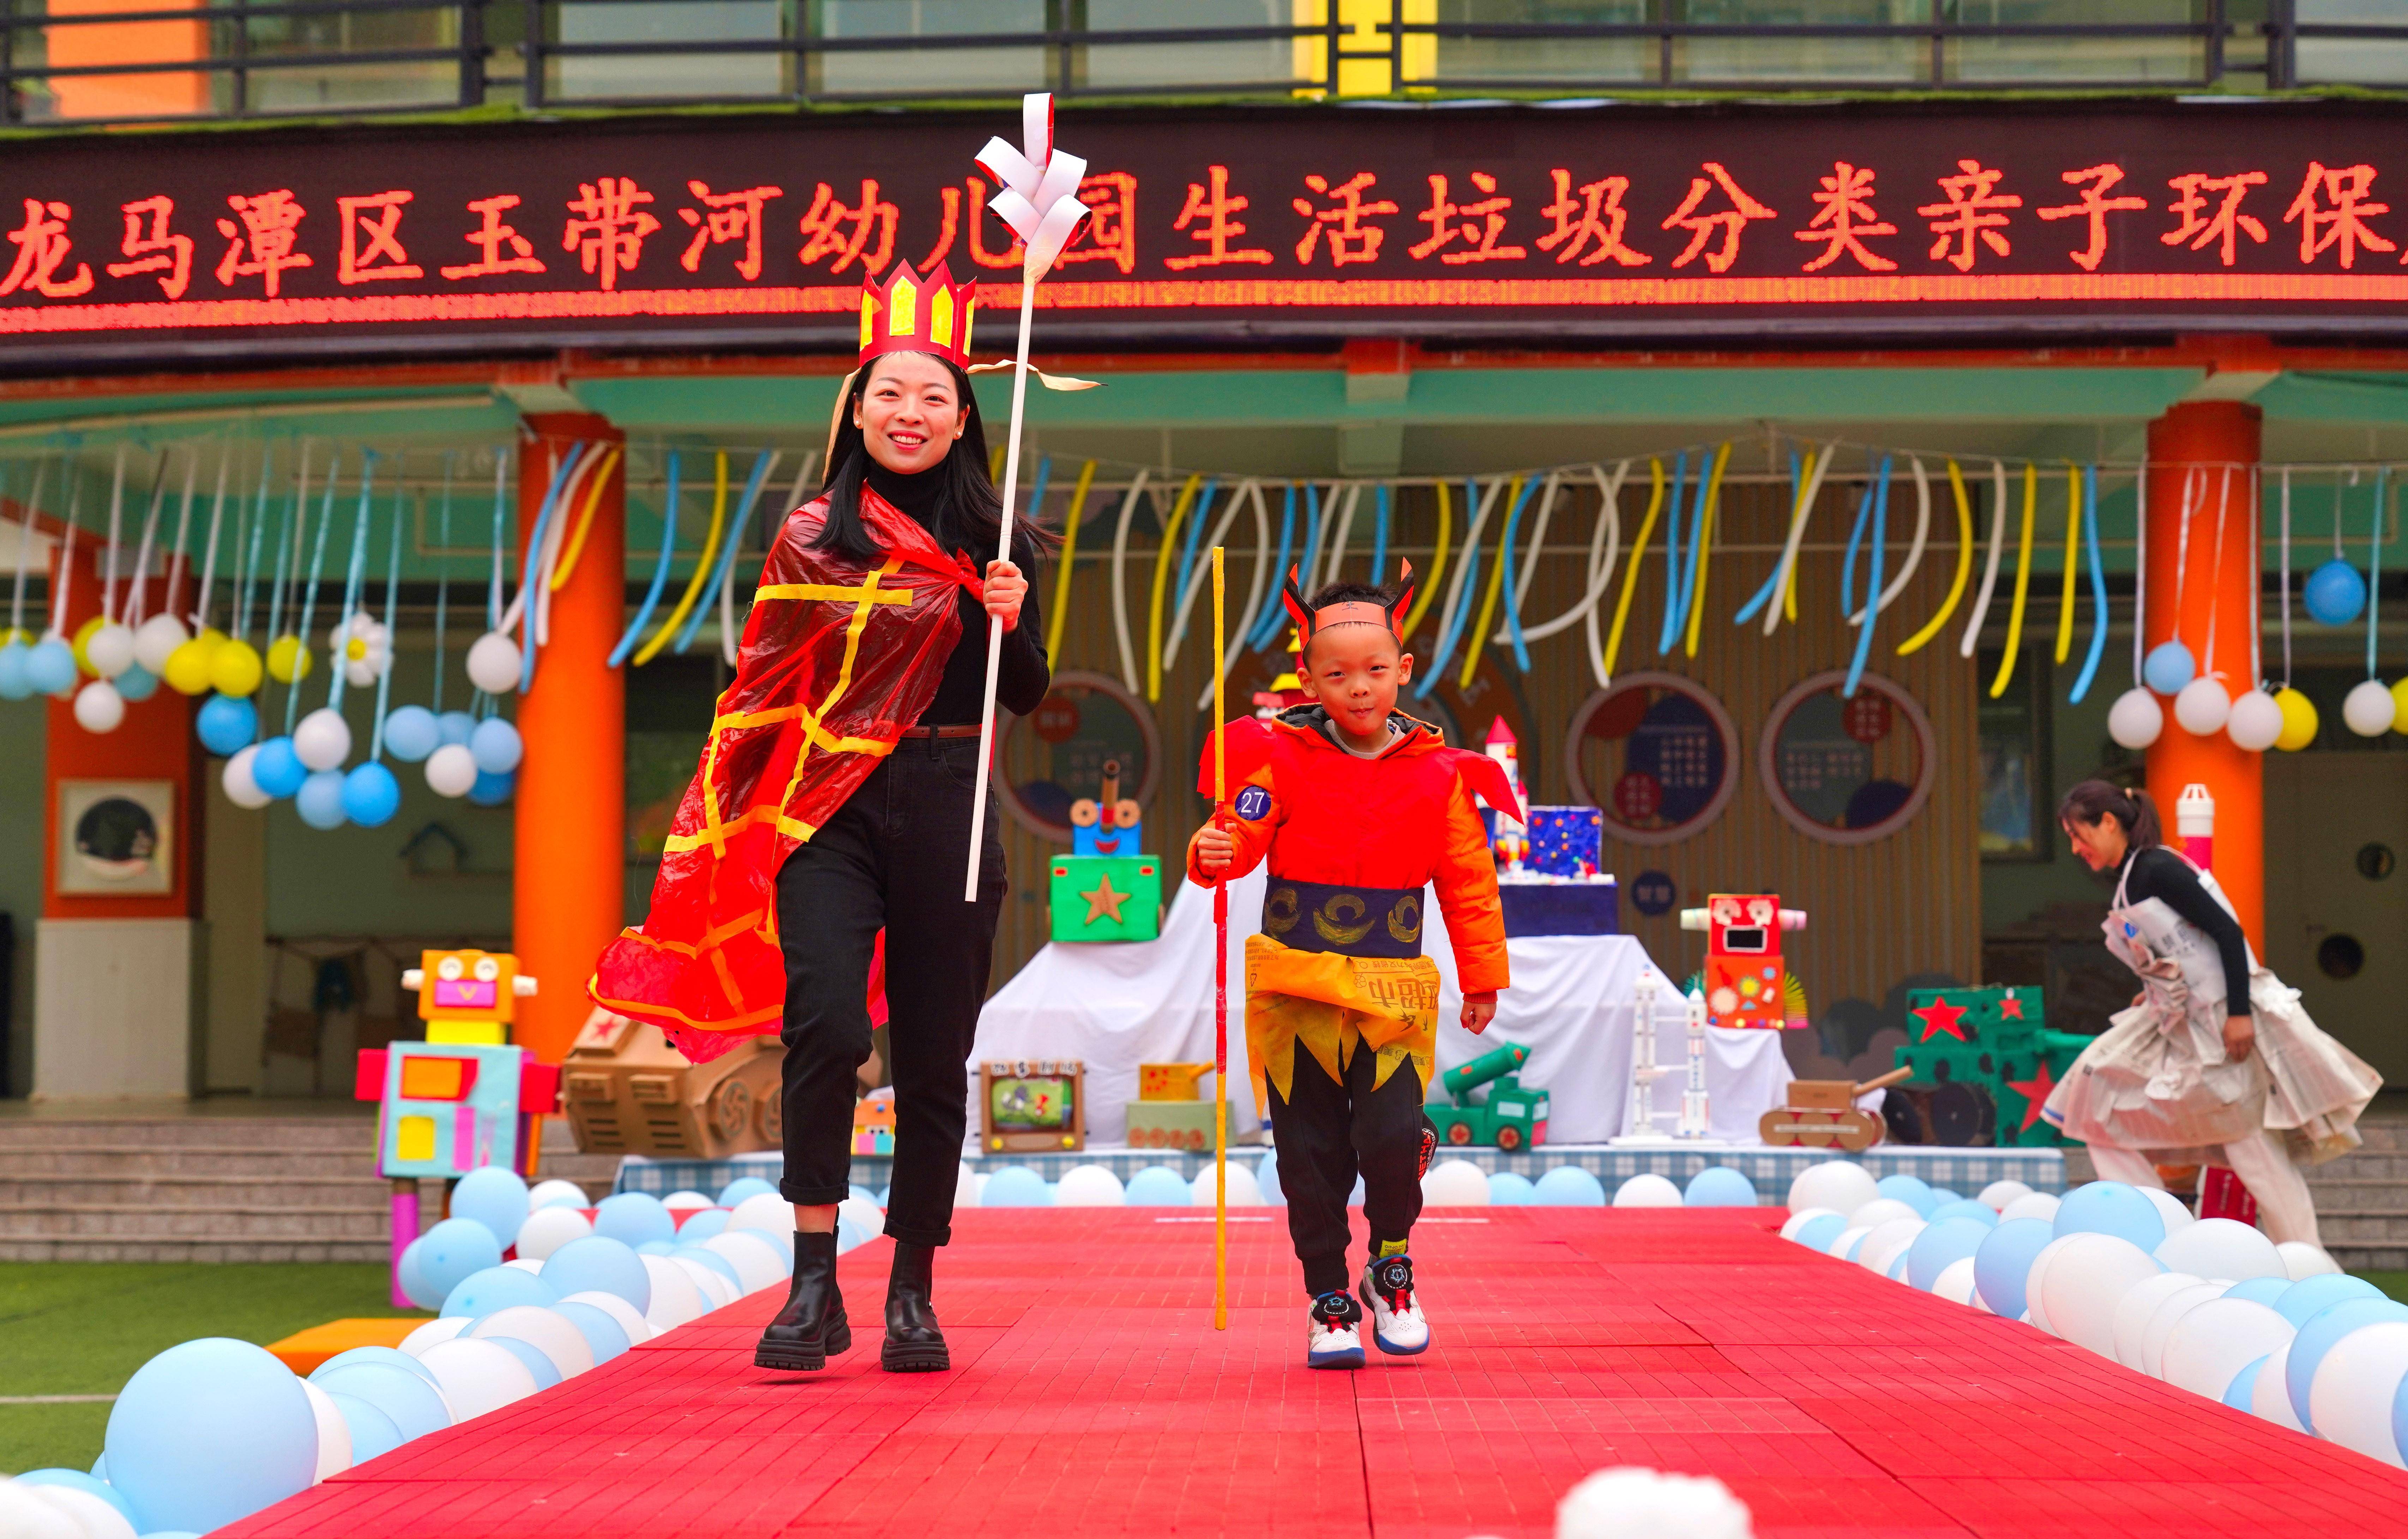 (教育)四川泸州:幼儿园举办亲子环保创意时装秀